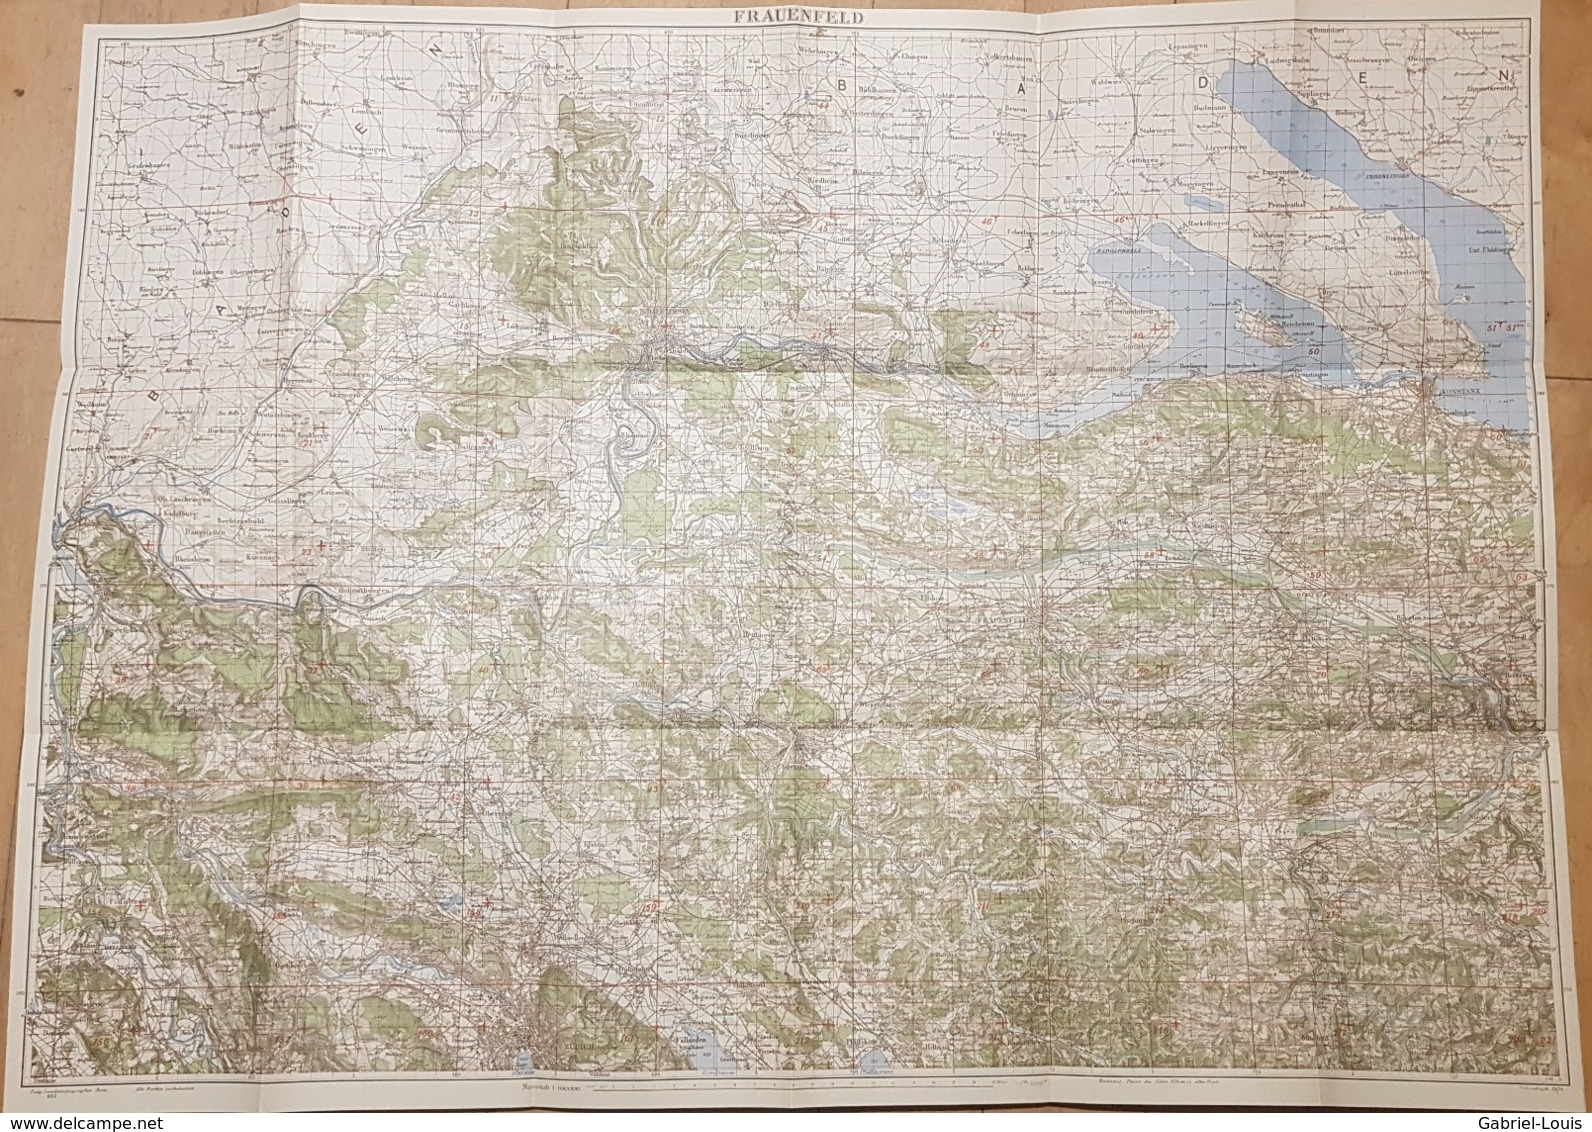 Karte Der Schweiz - Frauenfeld 1: 100000 1934 -~77 X 55 Cm Schaffhausen - Winterthur - Konstanz - Topographical Maps